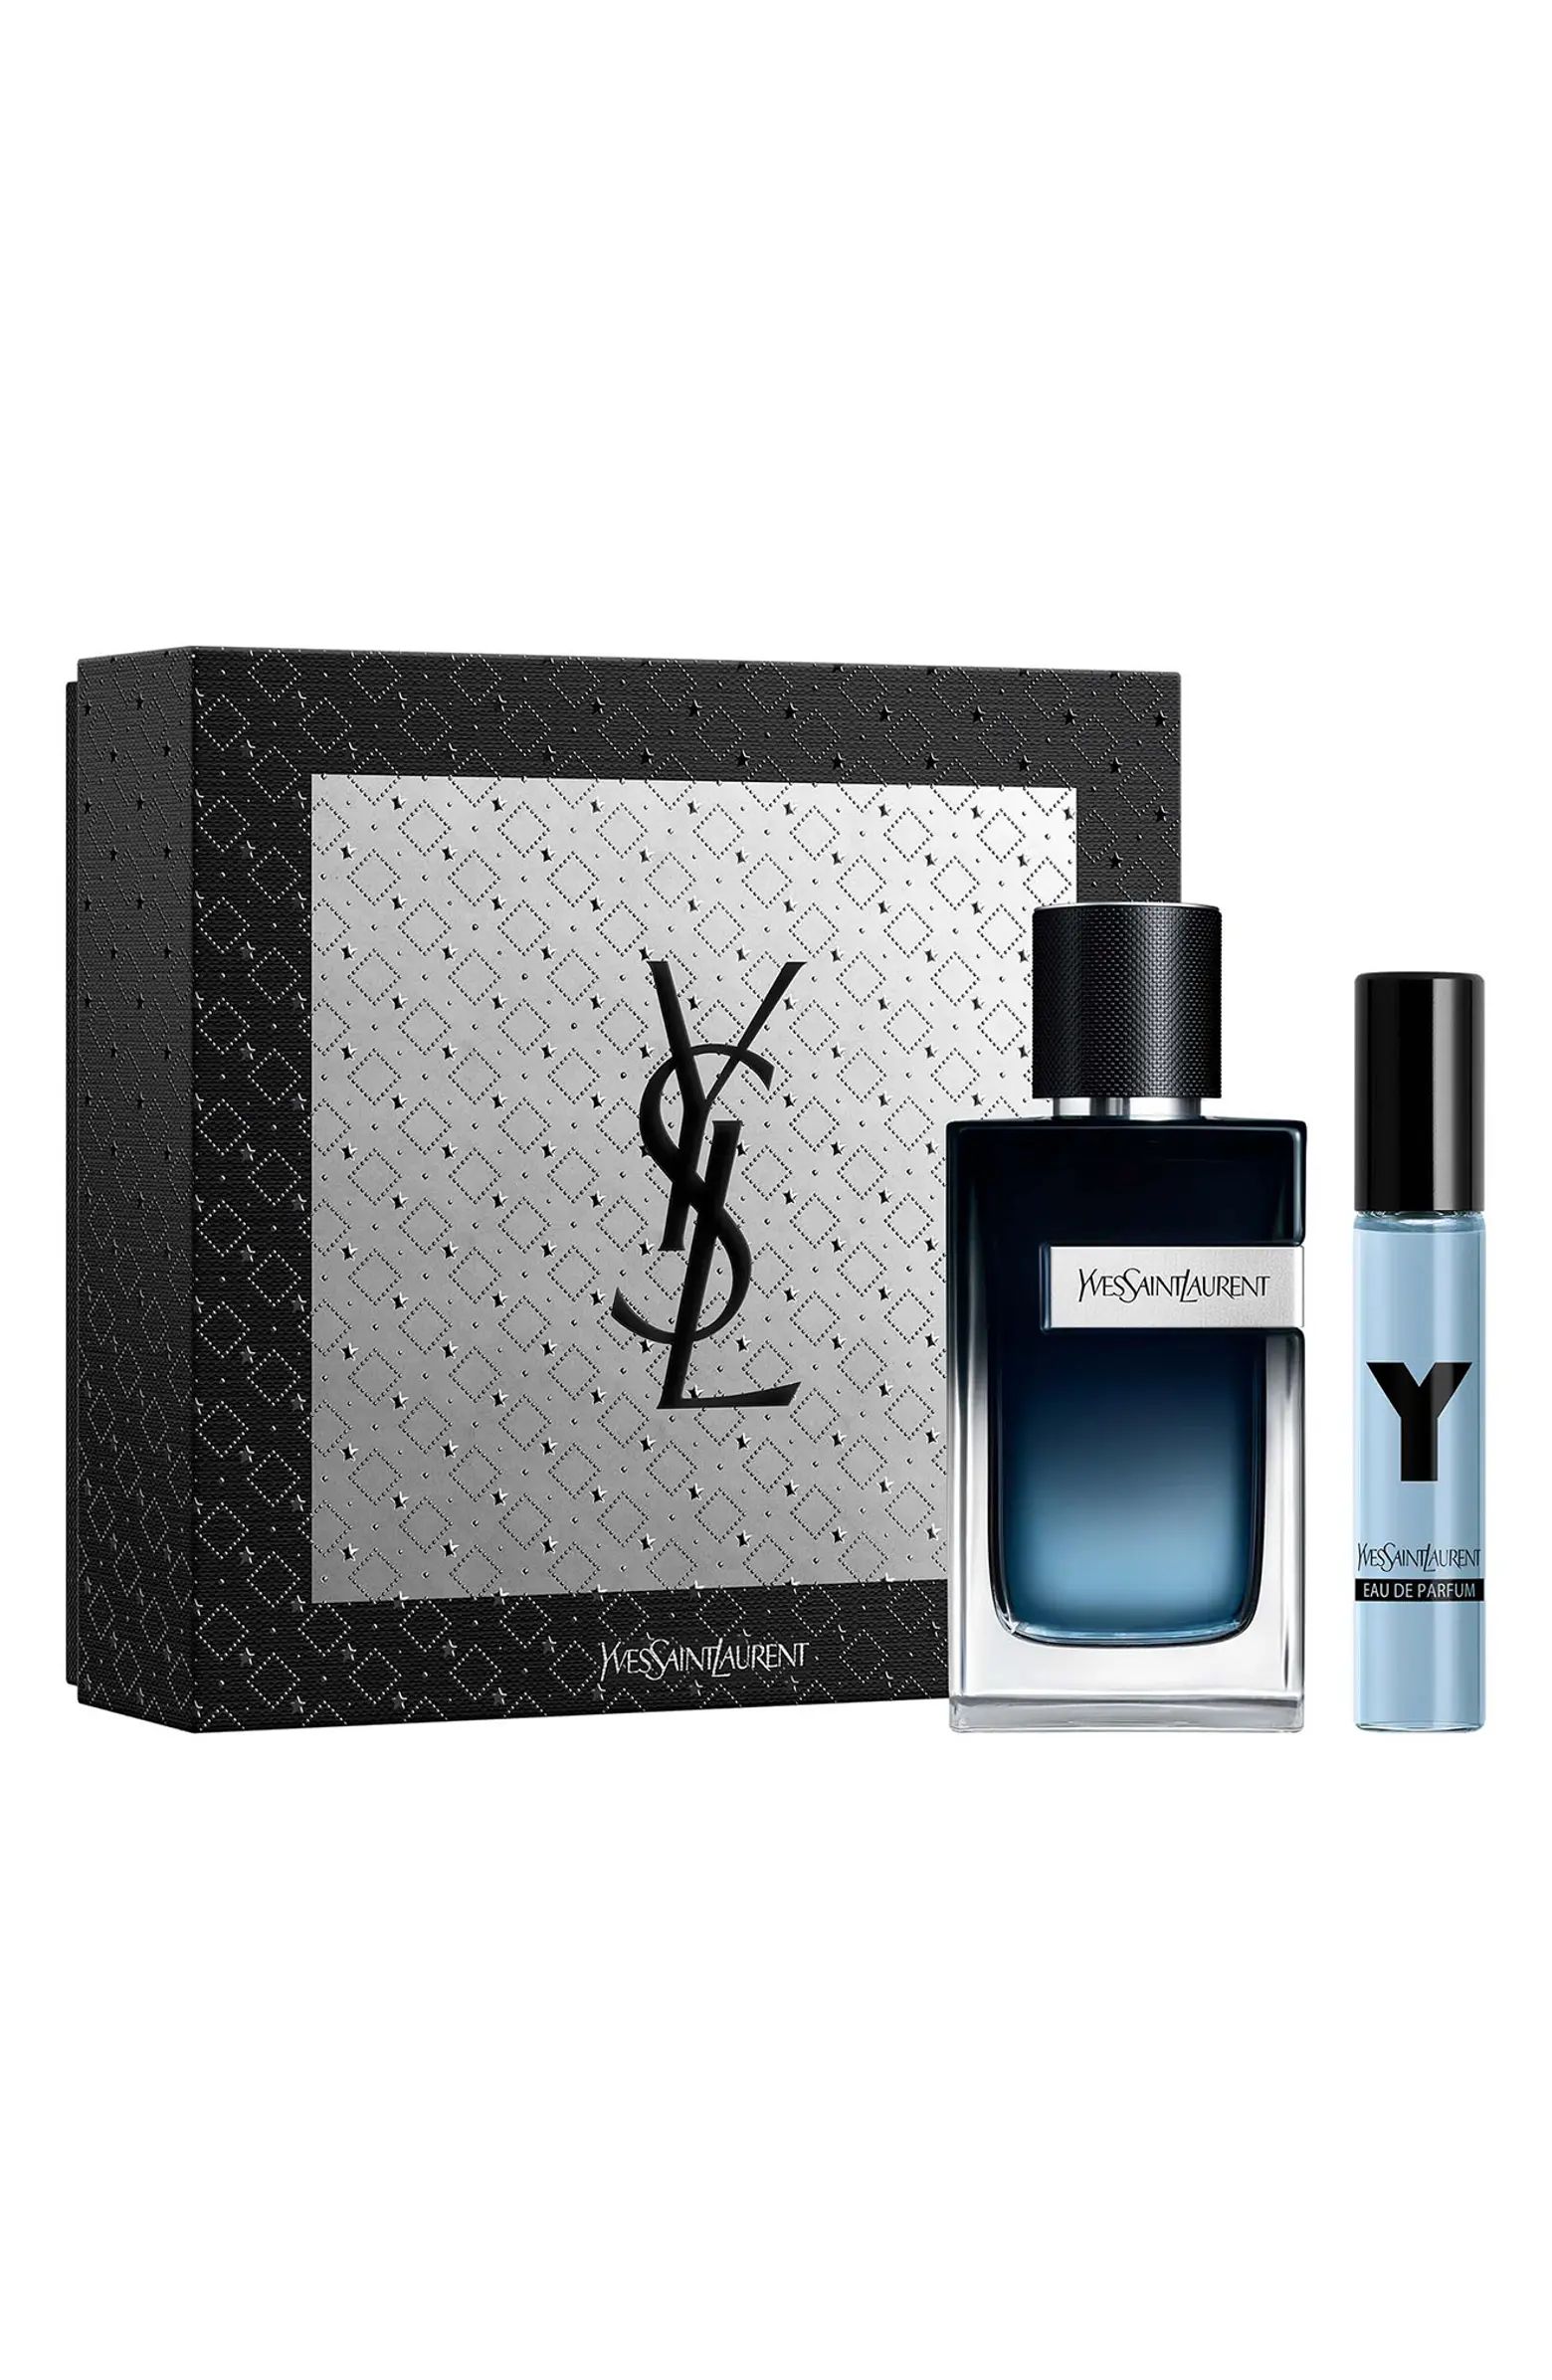 Yves Saint Laurent Y Eau de Parfum Set USD $169 Value | Nordstrom | Nordstrom